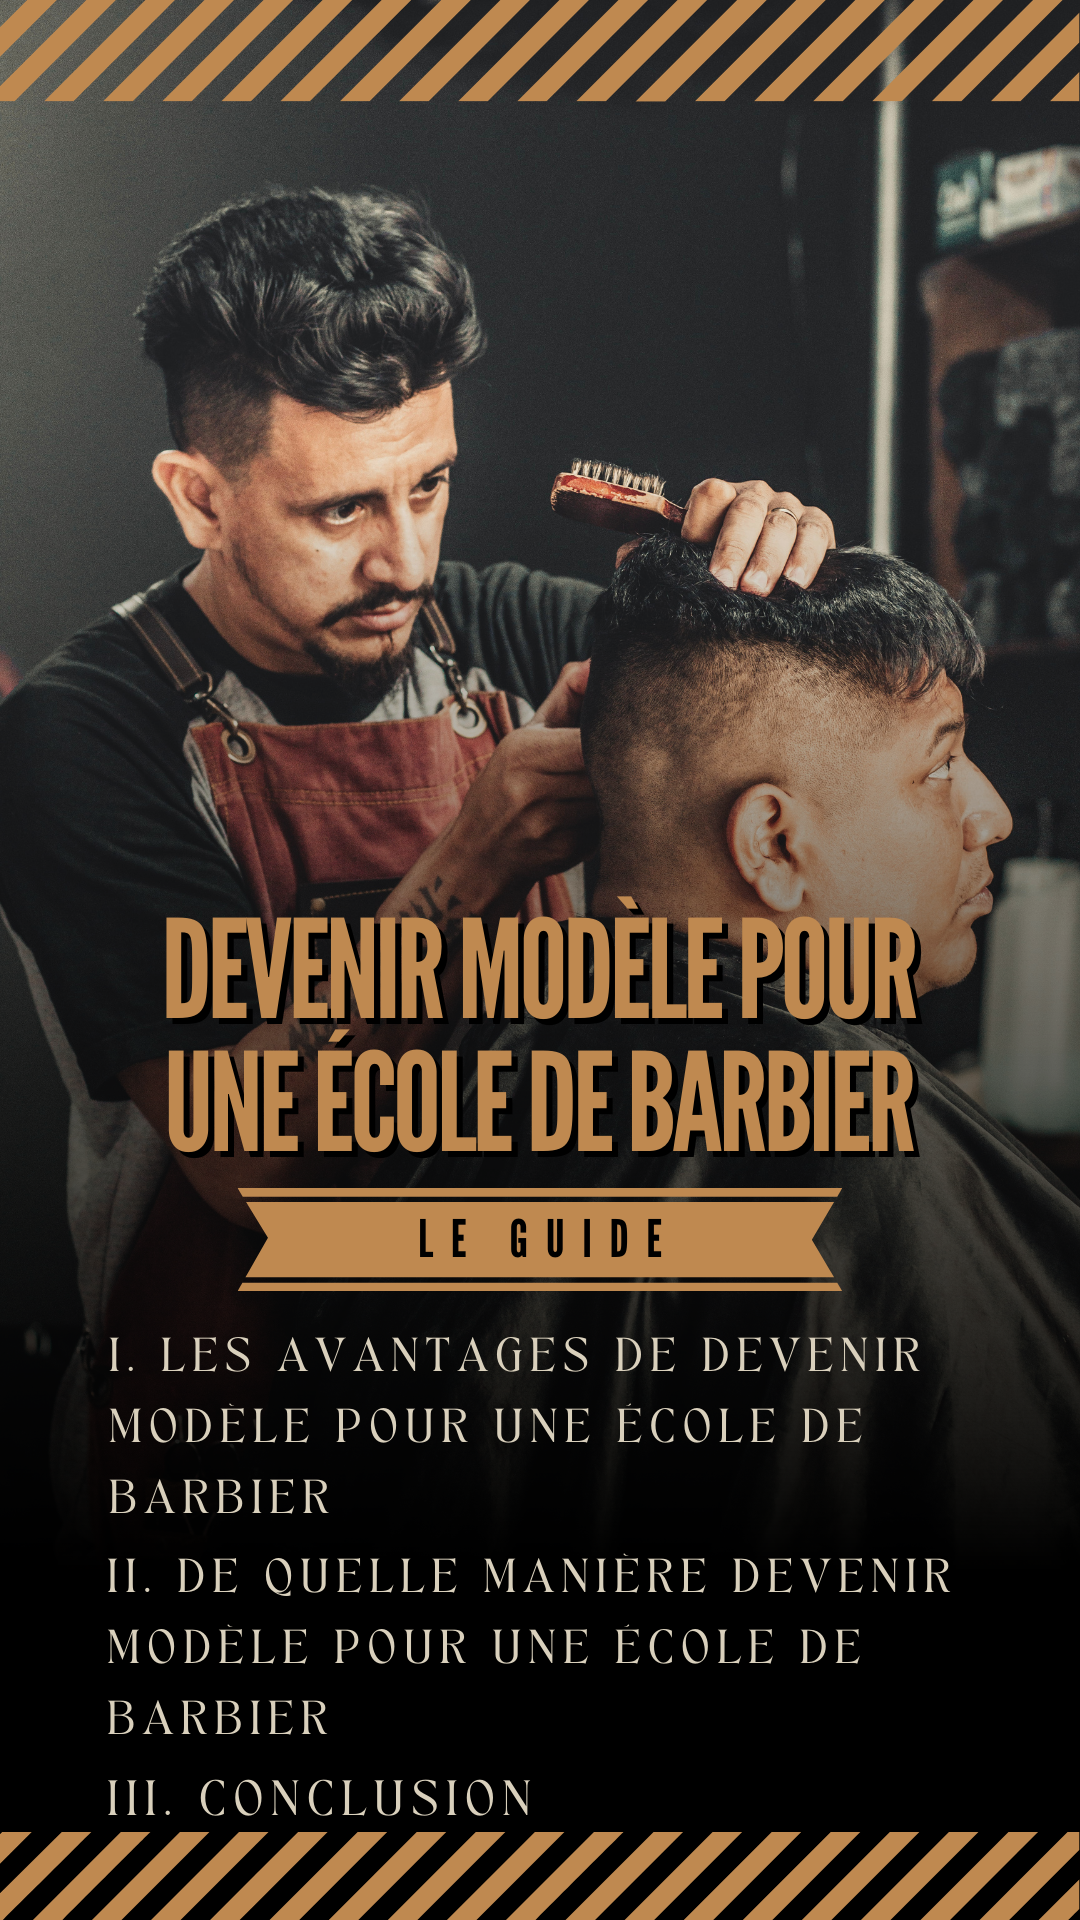 modèle pour une école de barbier